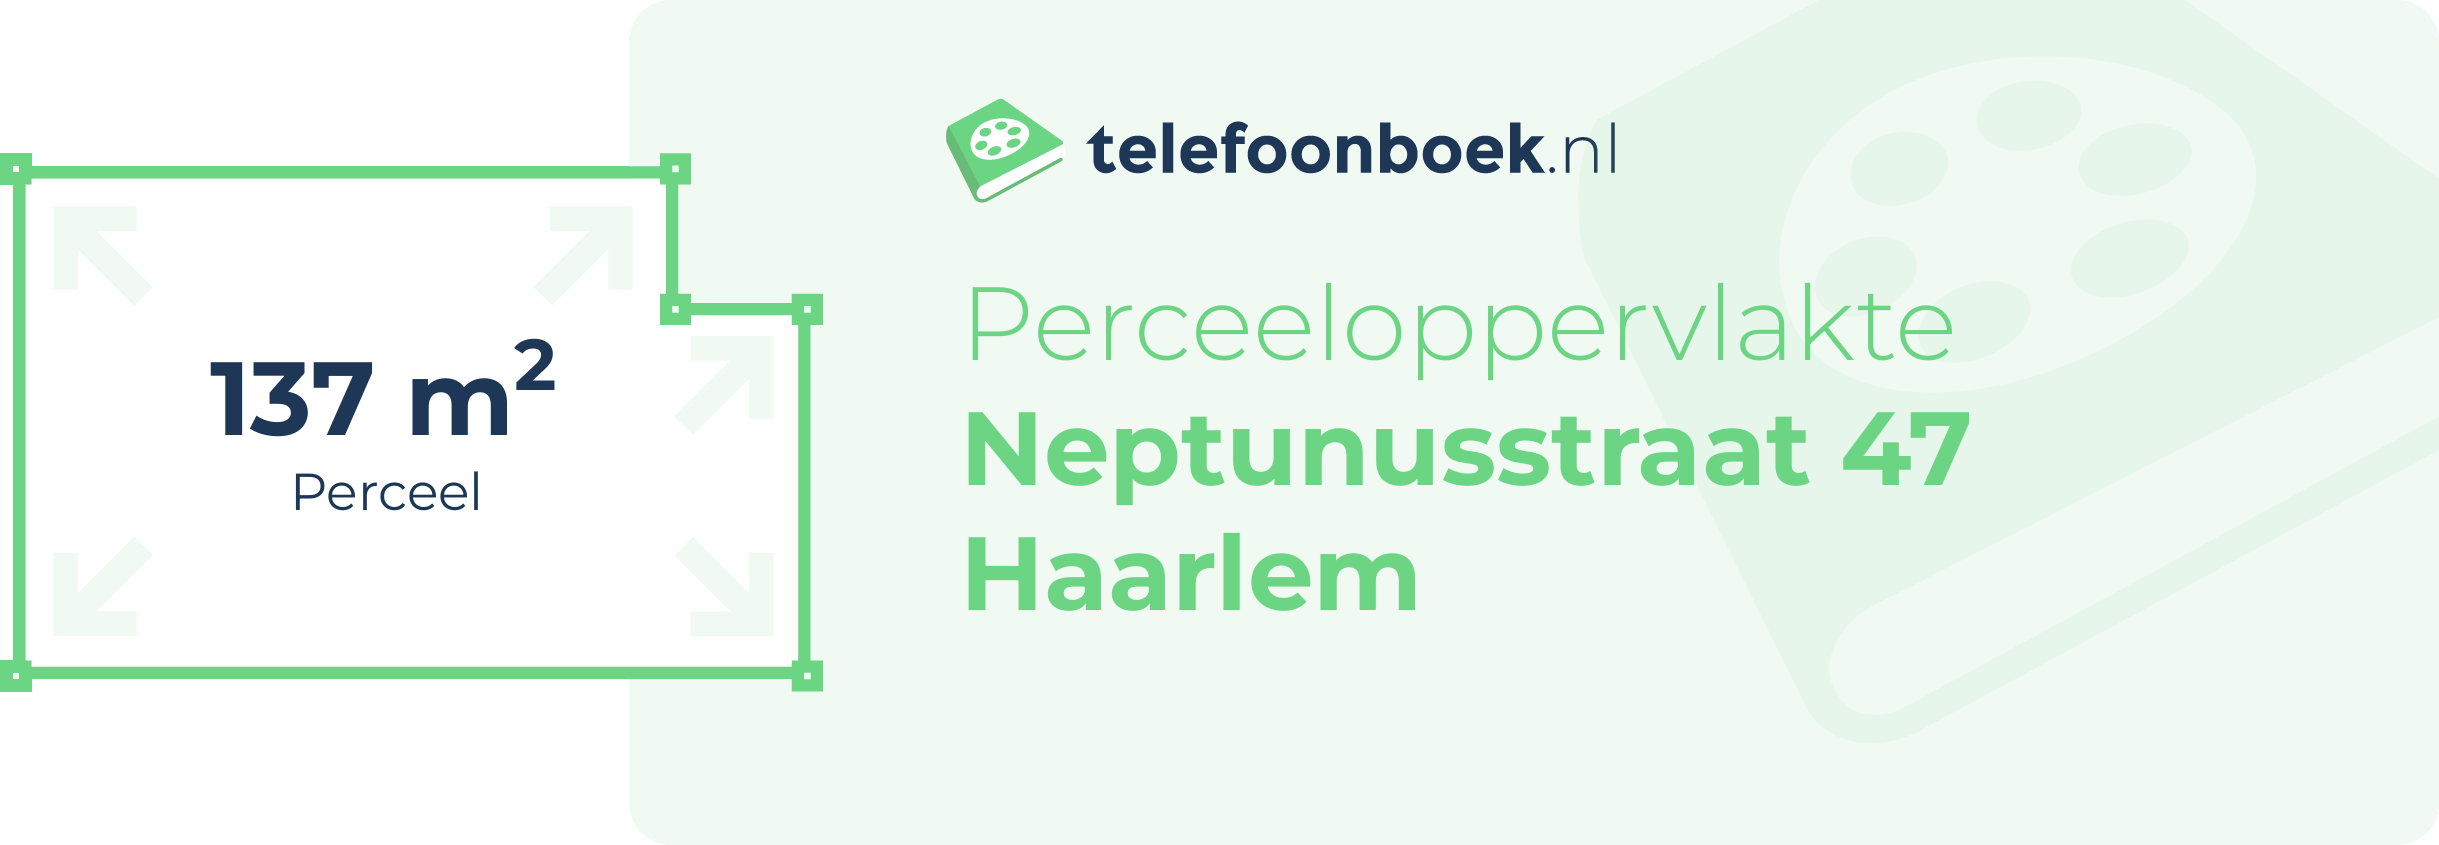 Perceeloppervlakte Neptunusstraat 47 Haarlem